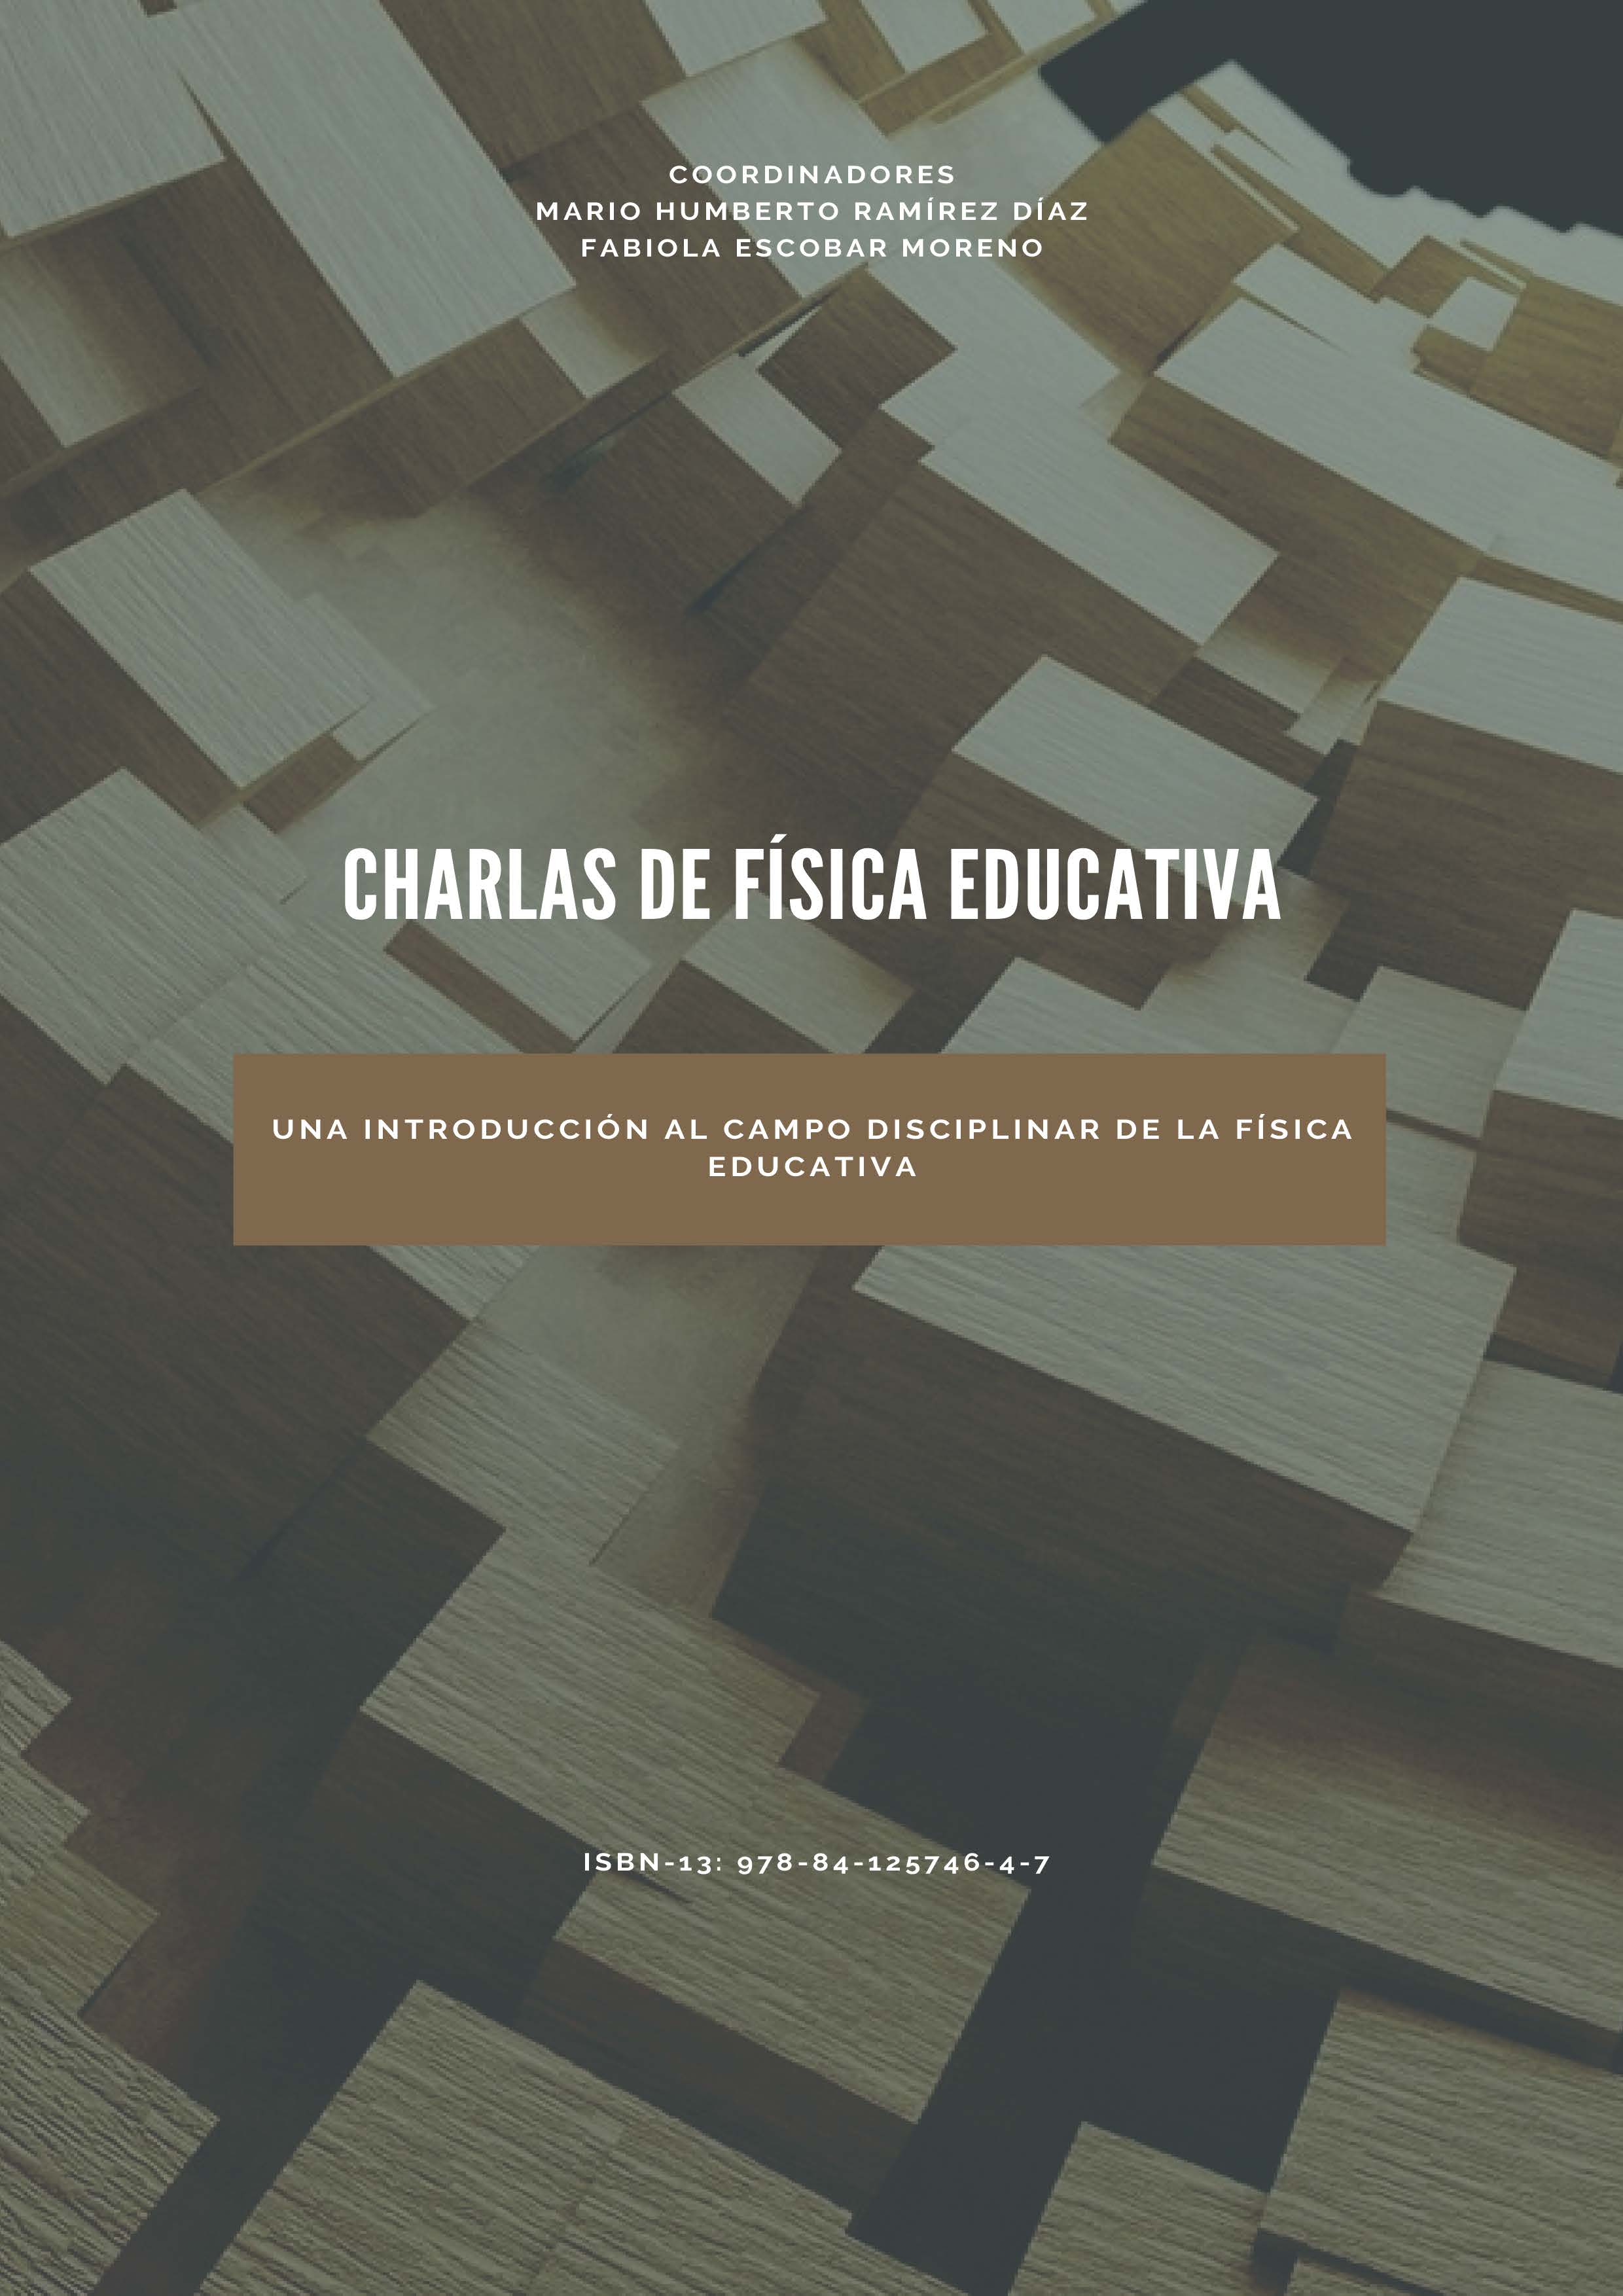 CHARLAS DE FÍSICA EDUCATIVA